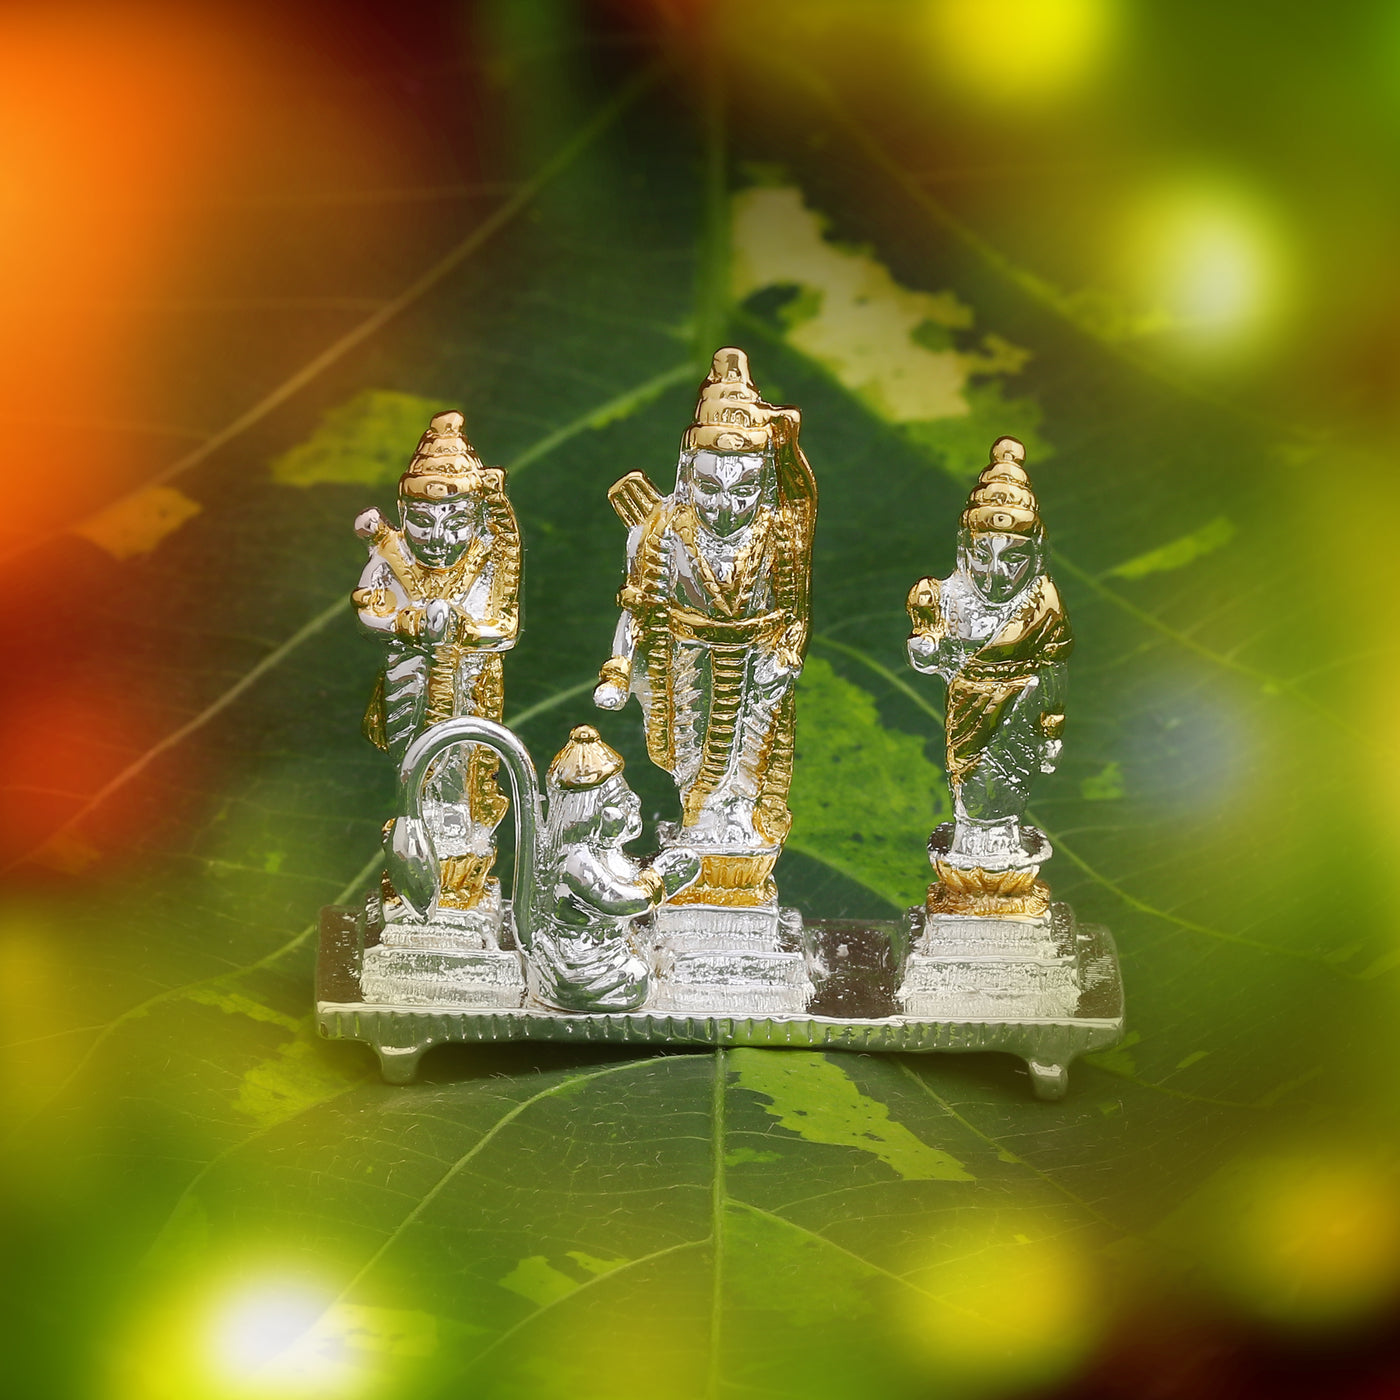 Shri Ram Darbar Idols (2TN)